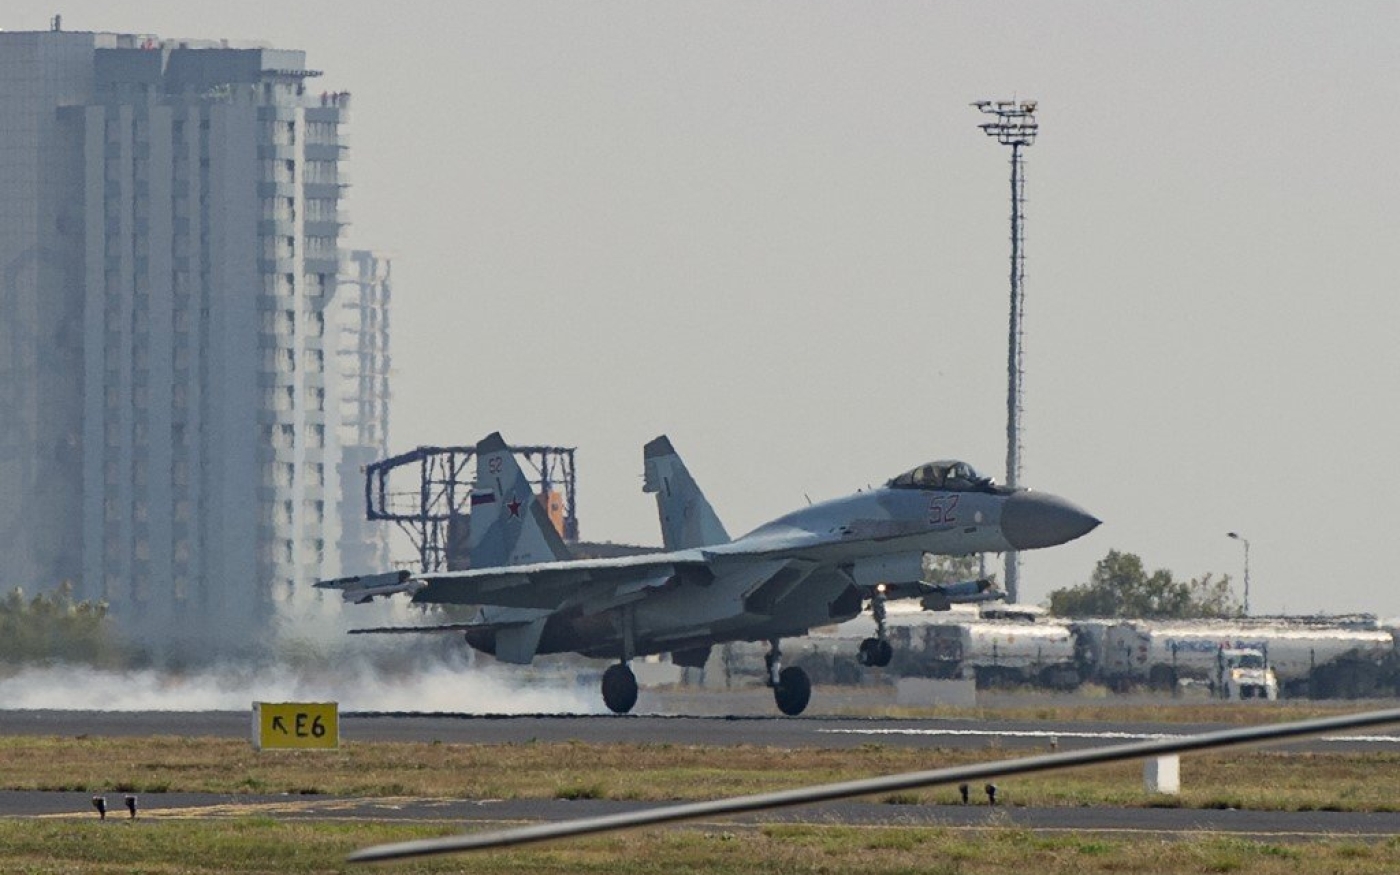 Un avion de chasse russe Su-35 atterrit lors d’un spectacle aérien à l’aéroport Atatürk d’Istanbul, le 17 septembre 2019 (AFP)